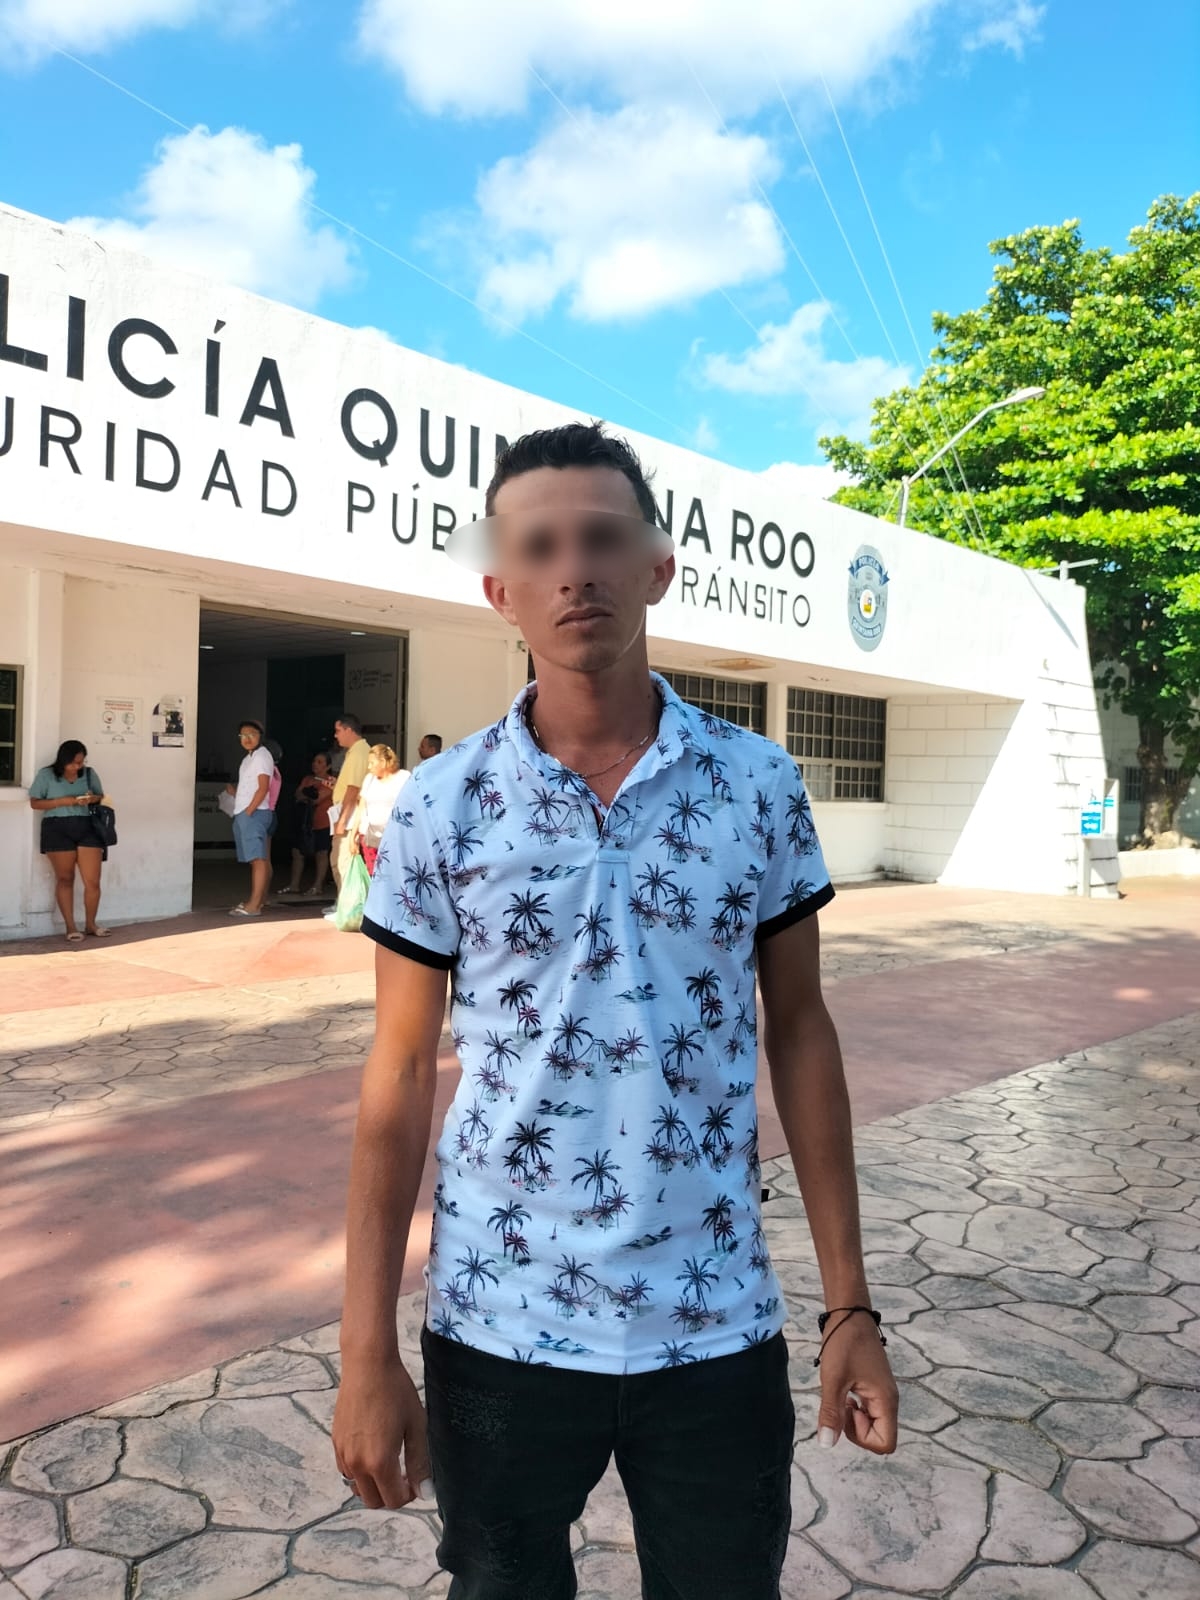 Colombiano acusa a Policía en Cozumel de 'plantarle' droga